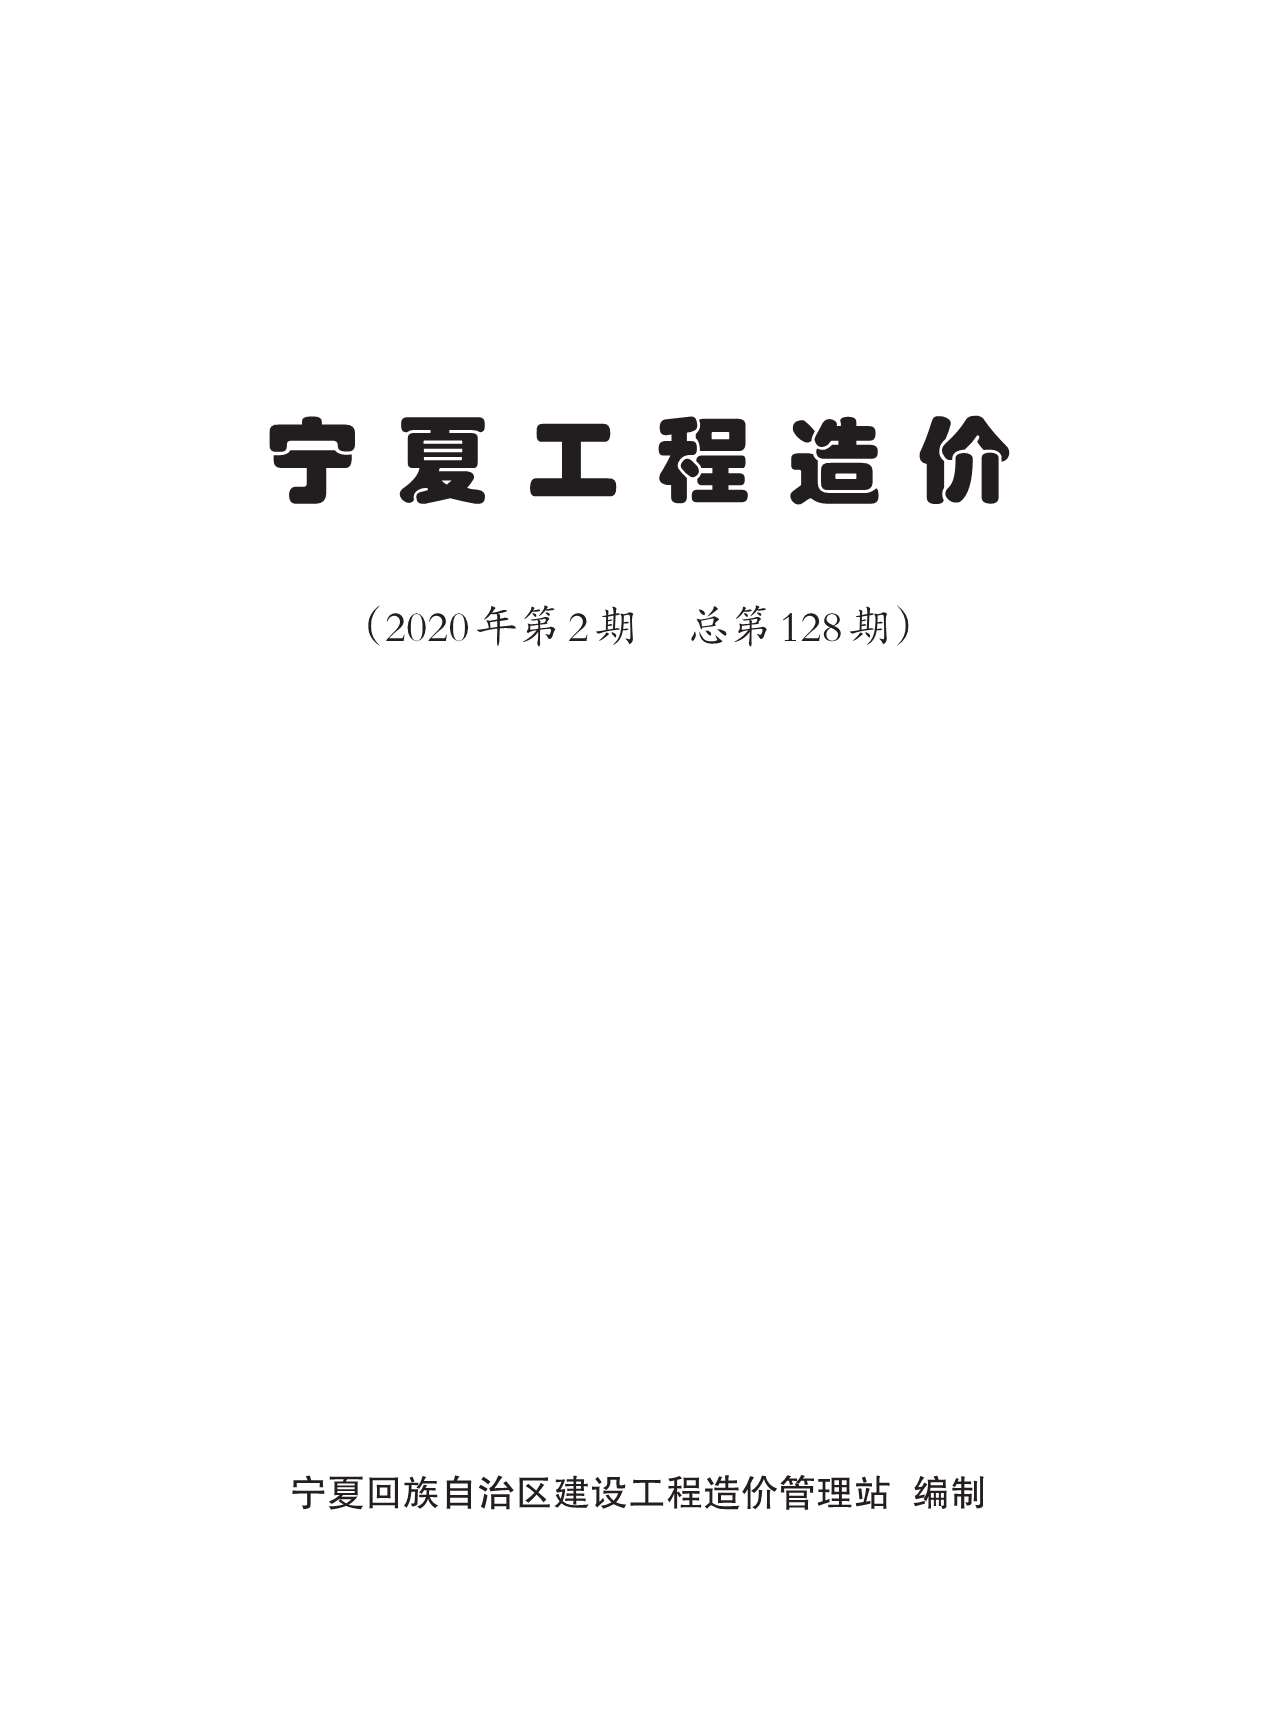 宁夏自治区2020年2月工程信息价_宁夏自治区信息价期刊PDF扫描件电子版